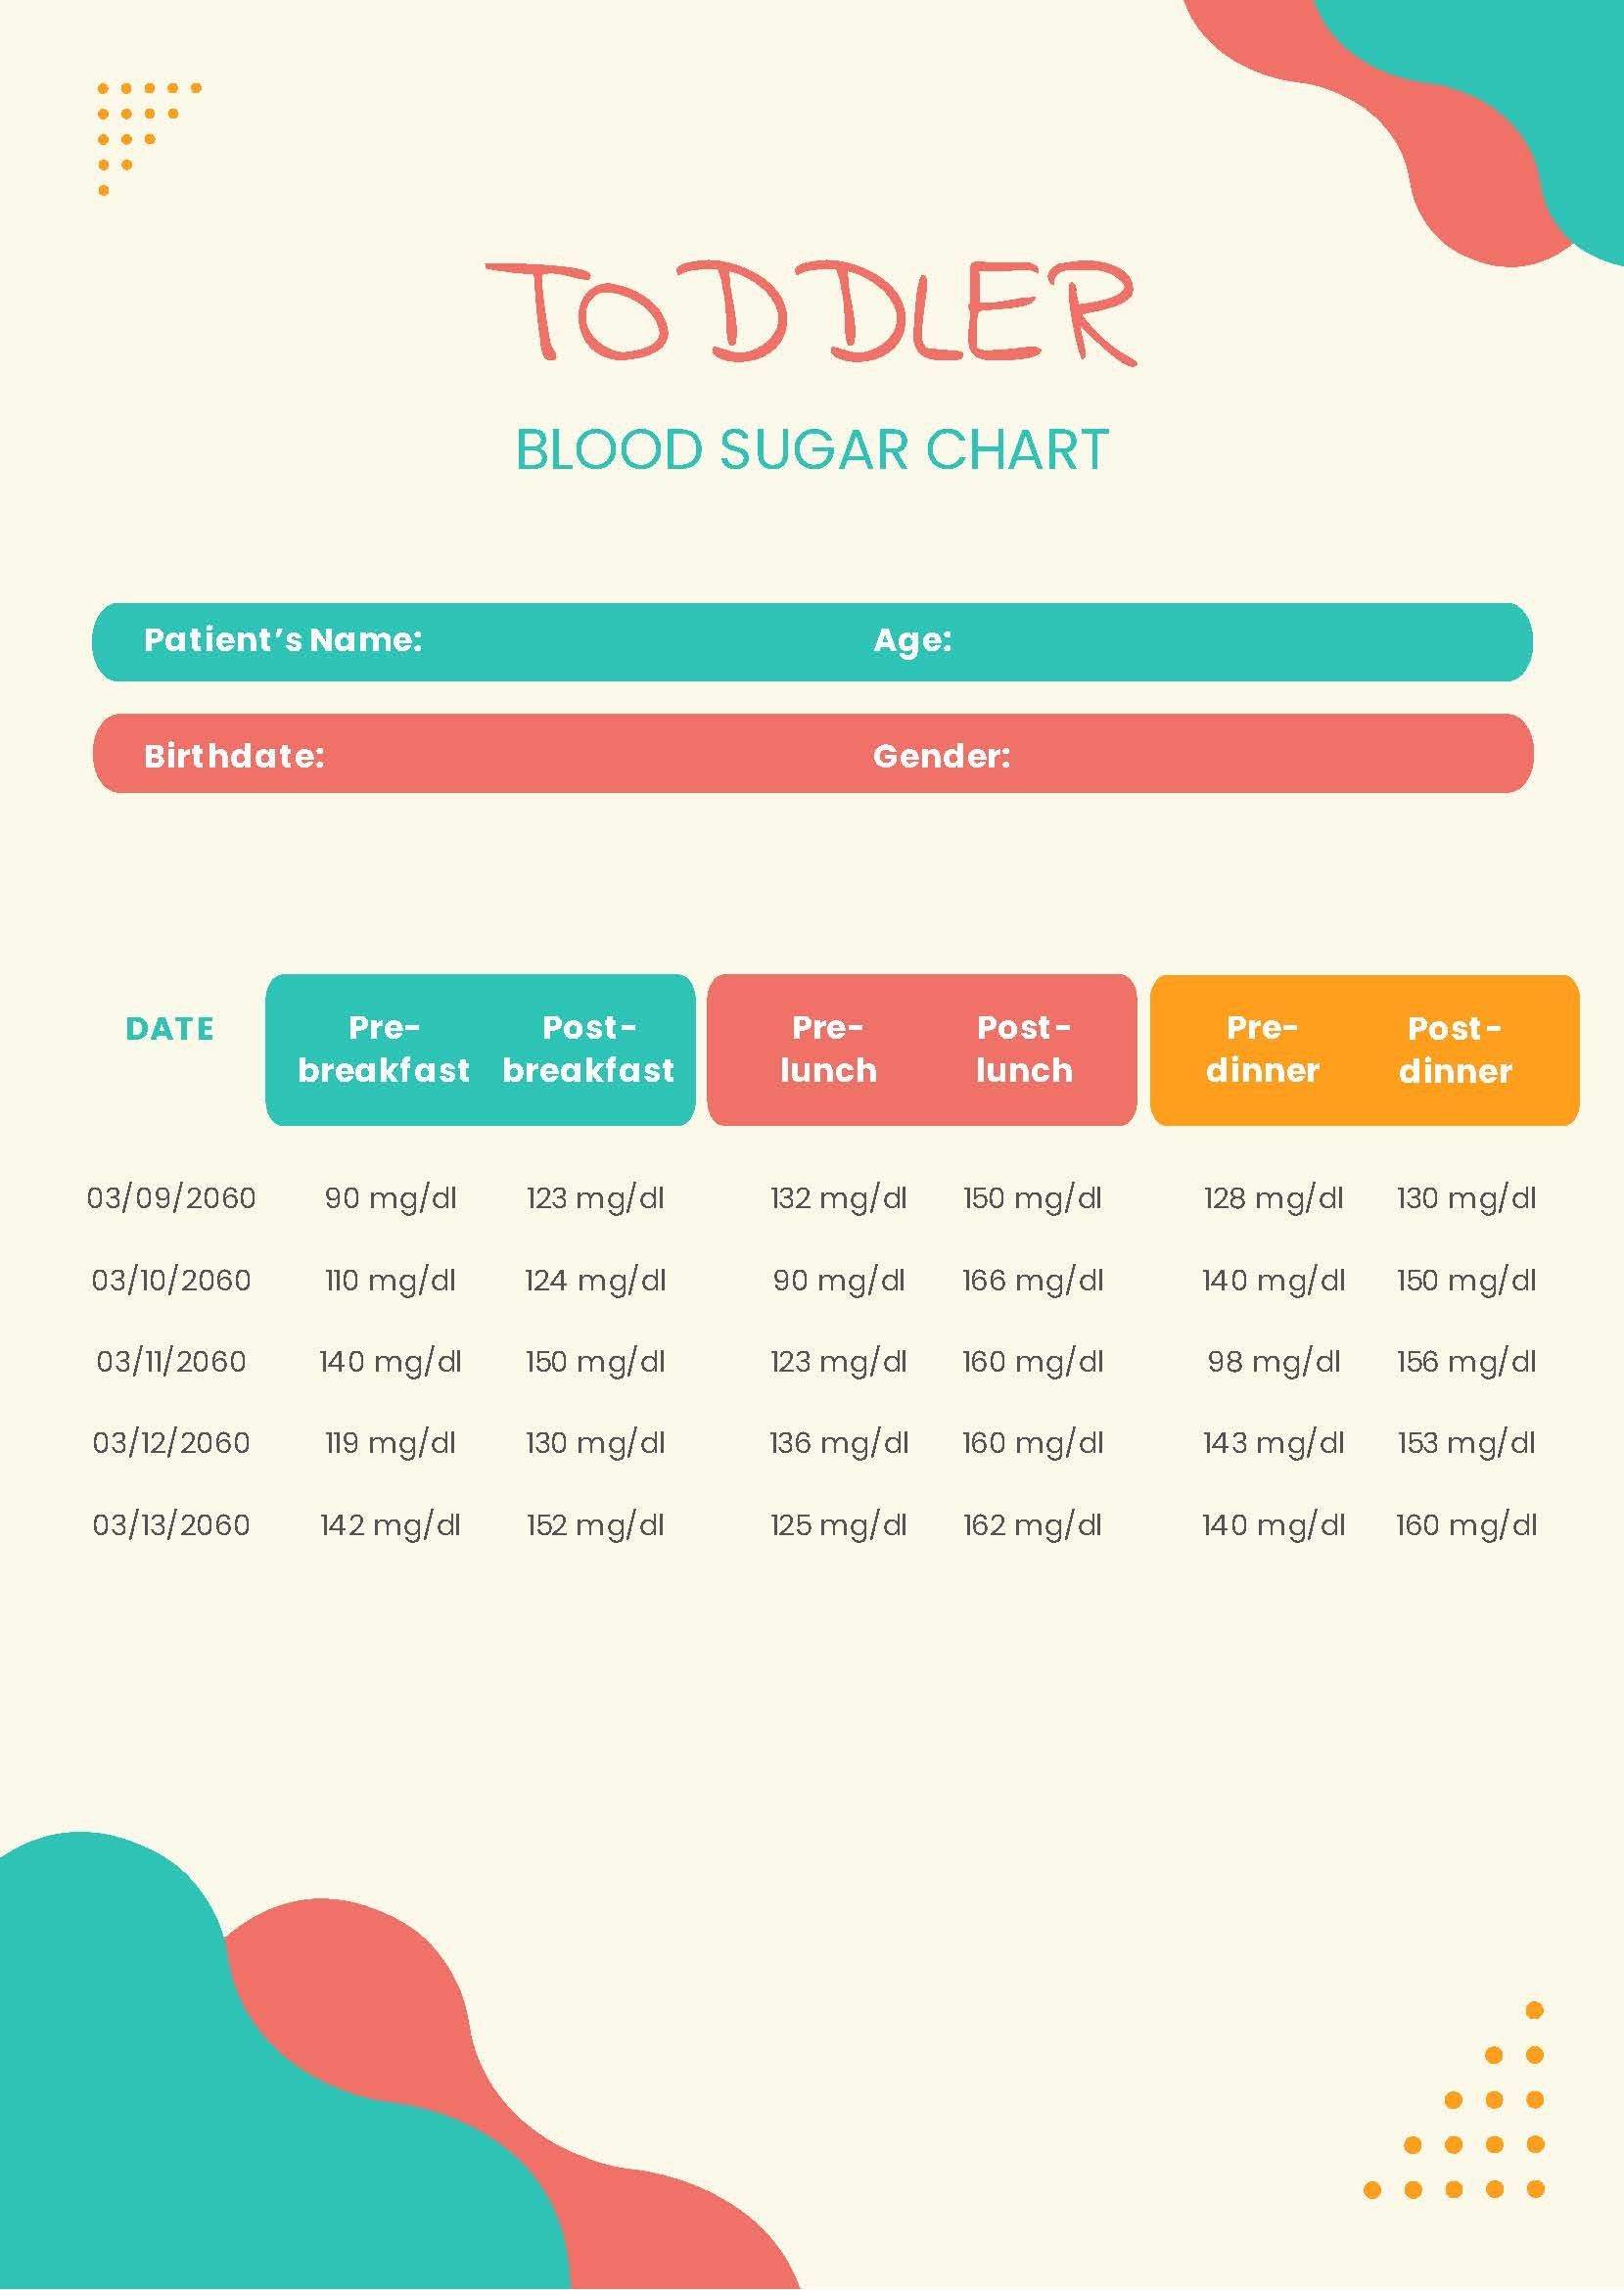 Toddler Blood Sugar Chart